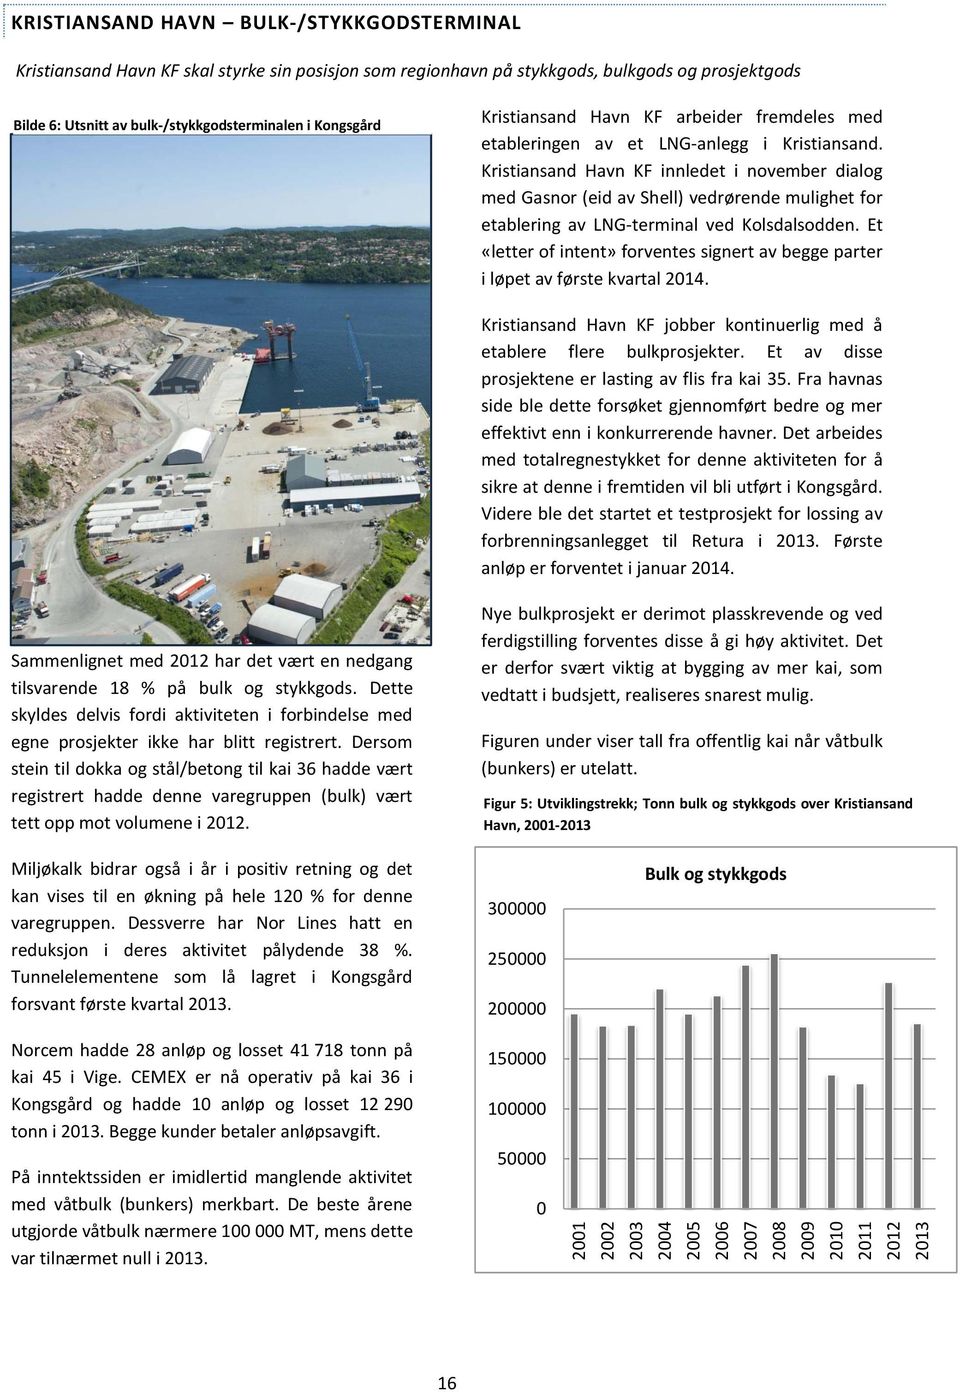 Kristiansand Havn KF innledet i november dialog med Gasnor (eid av Shell) vedrørende mulighet for etablering av LNG-terminal ved Kolsdalsodden.